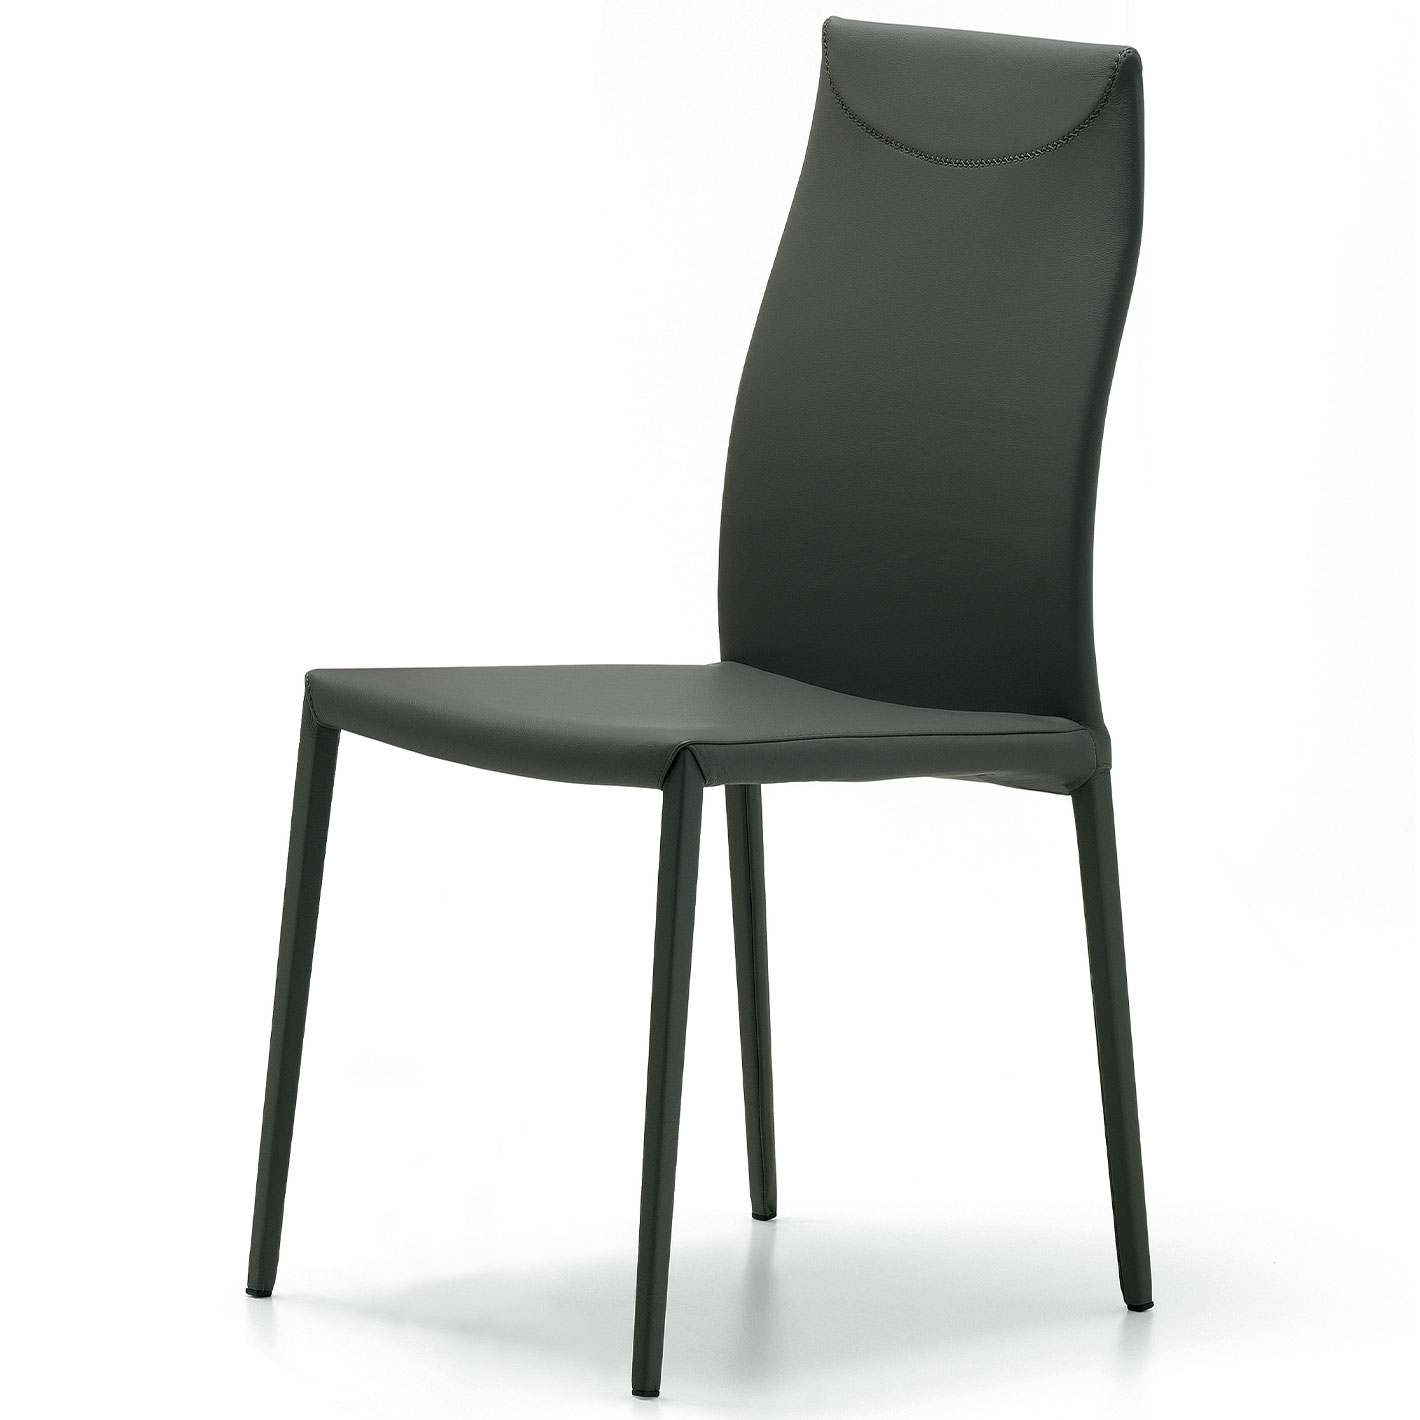 Stühle unter 500 Euro - MAYA FLEX Stuhl